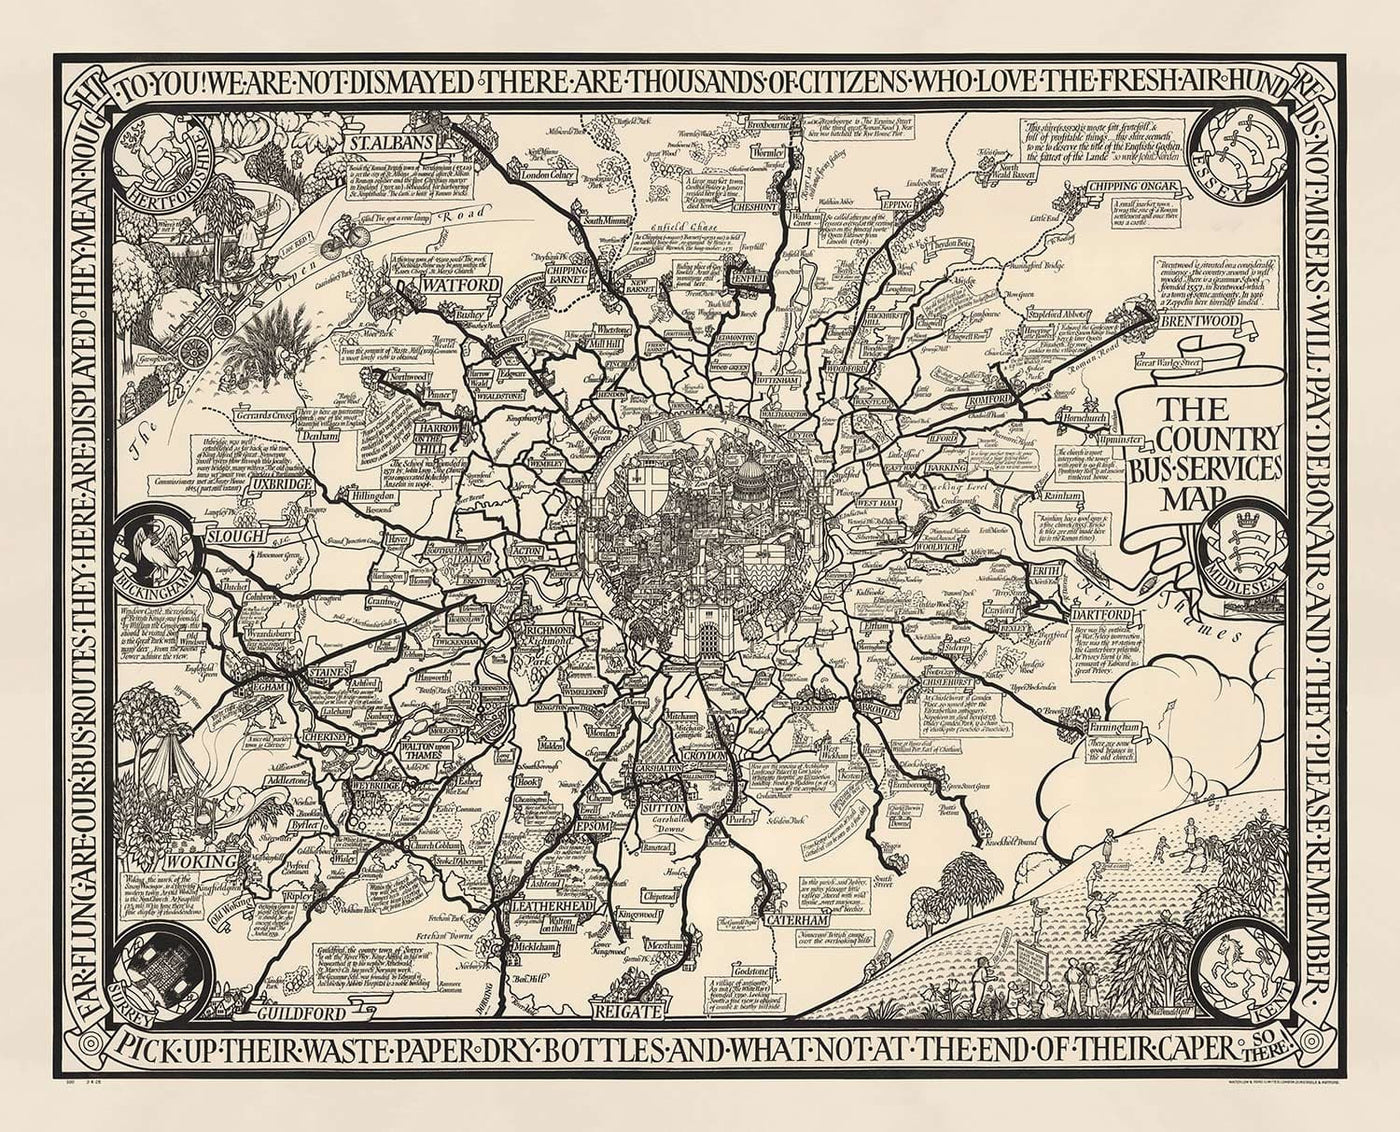 Viejo mapa monocromo de Londres, suburbios y cinturón de cercanías de Max Gill en 1928 - "Flow Flog son nuestras rutas de autobuses"